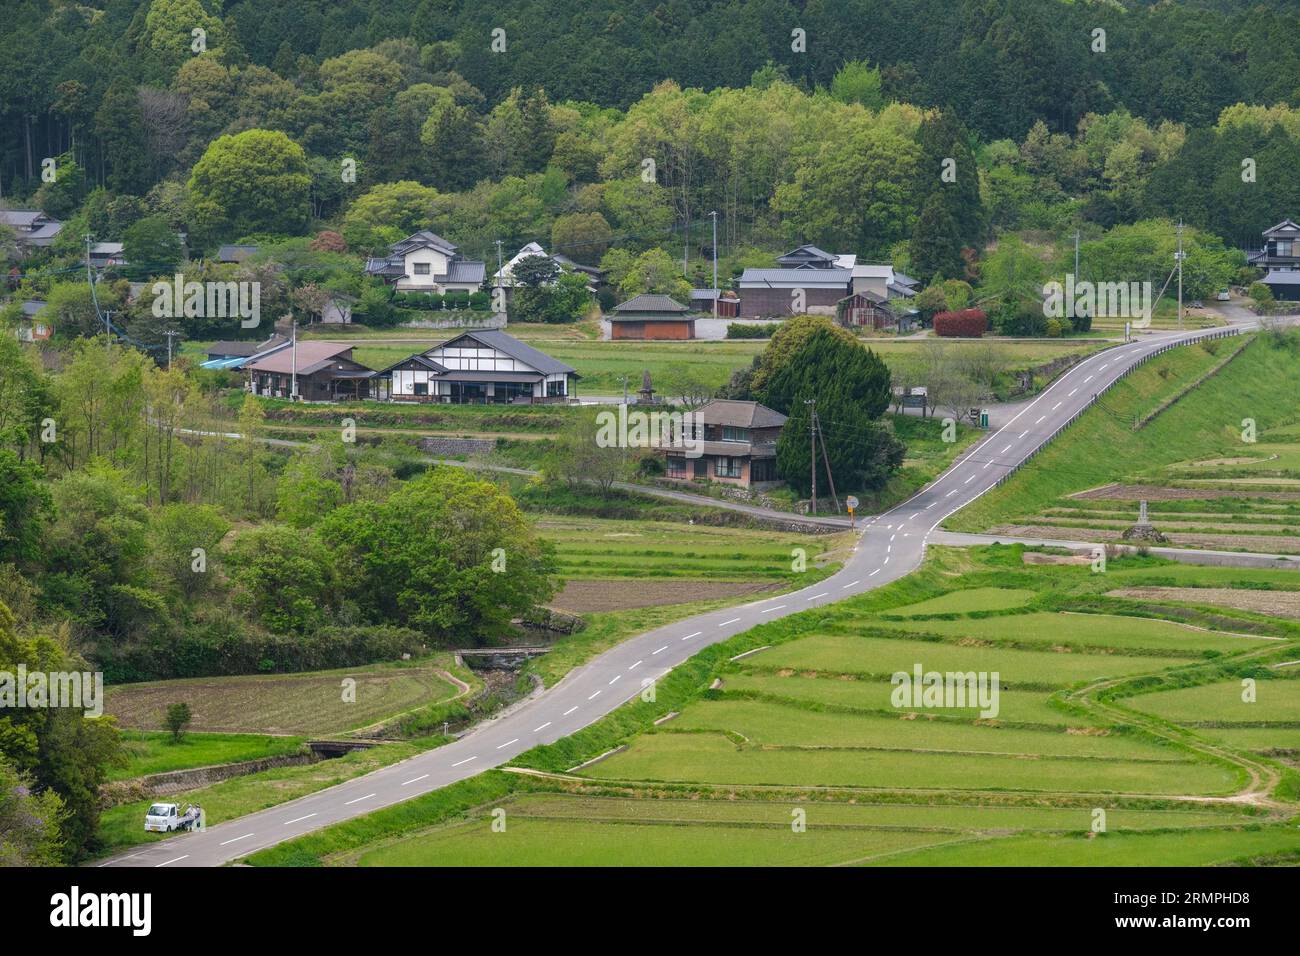 Japan, Kyushu. View of Tashibu-no-sho Village and Farmland. Kunisaki Peninsula, Oita Prefecture. Stock Photo